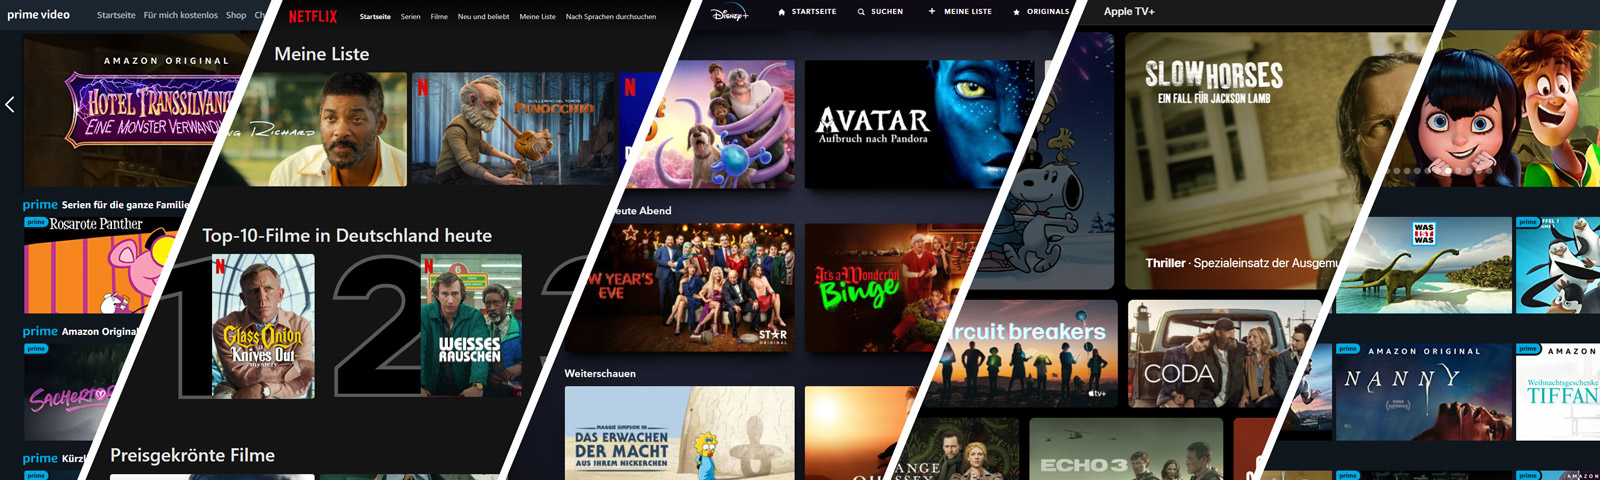 Verschiedene Streaming-Dienste im Überblick: Amazon Prime Video, Netflix, Disney+, Apple TV